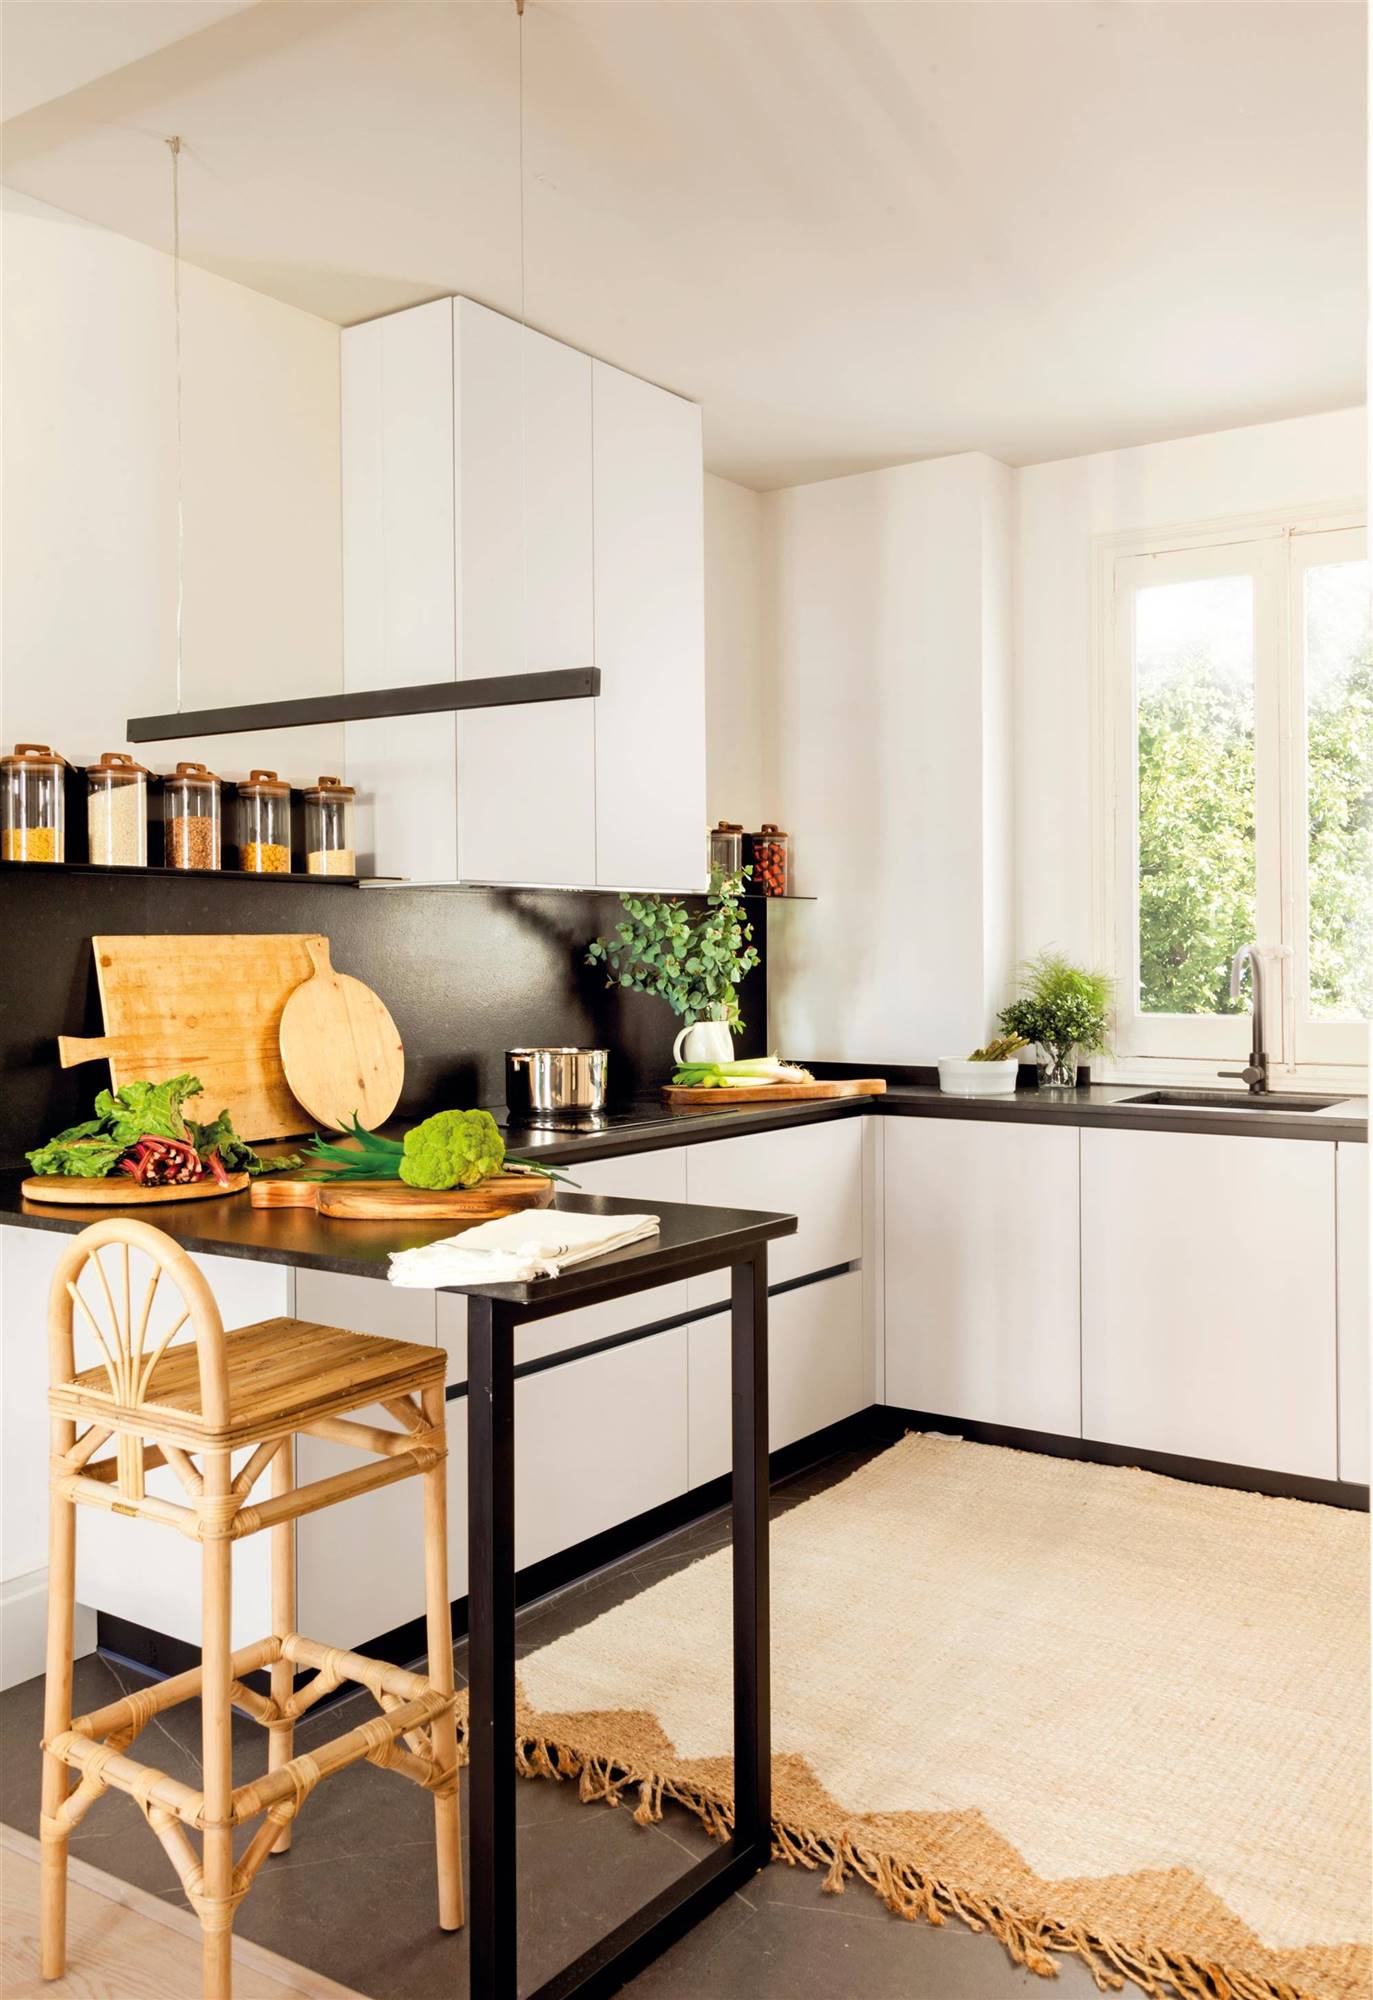 Una cocina pequeña en blanco y negro con una zona de barra muy ligera